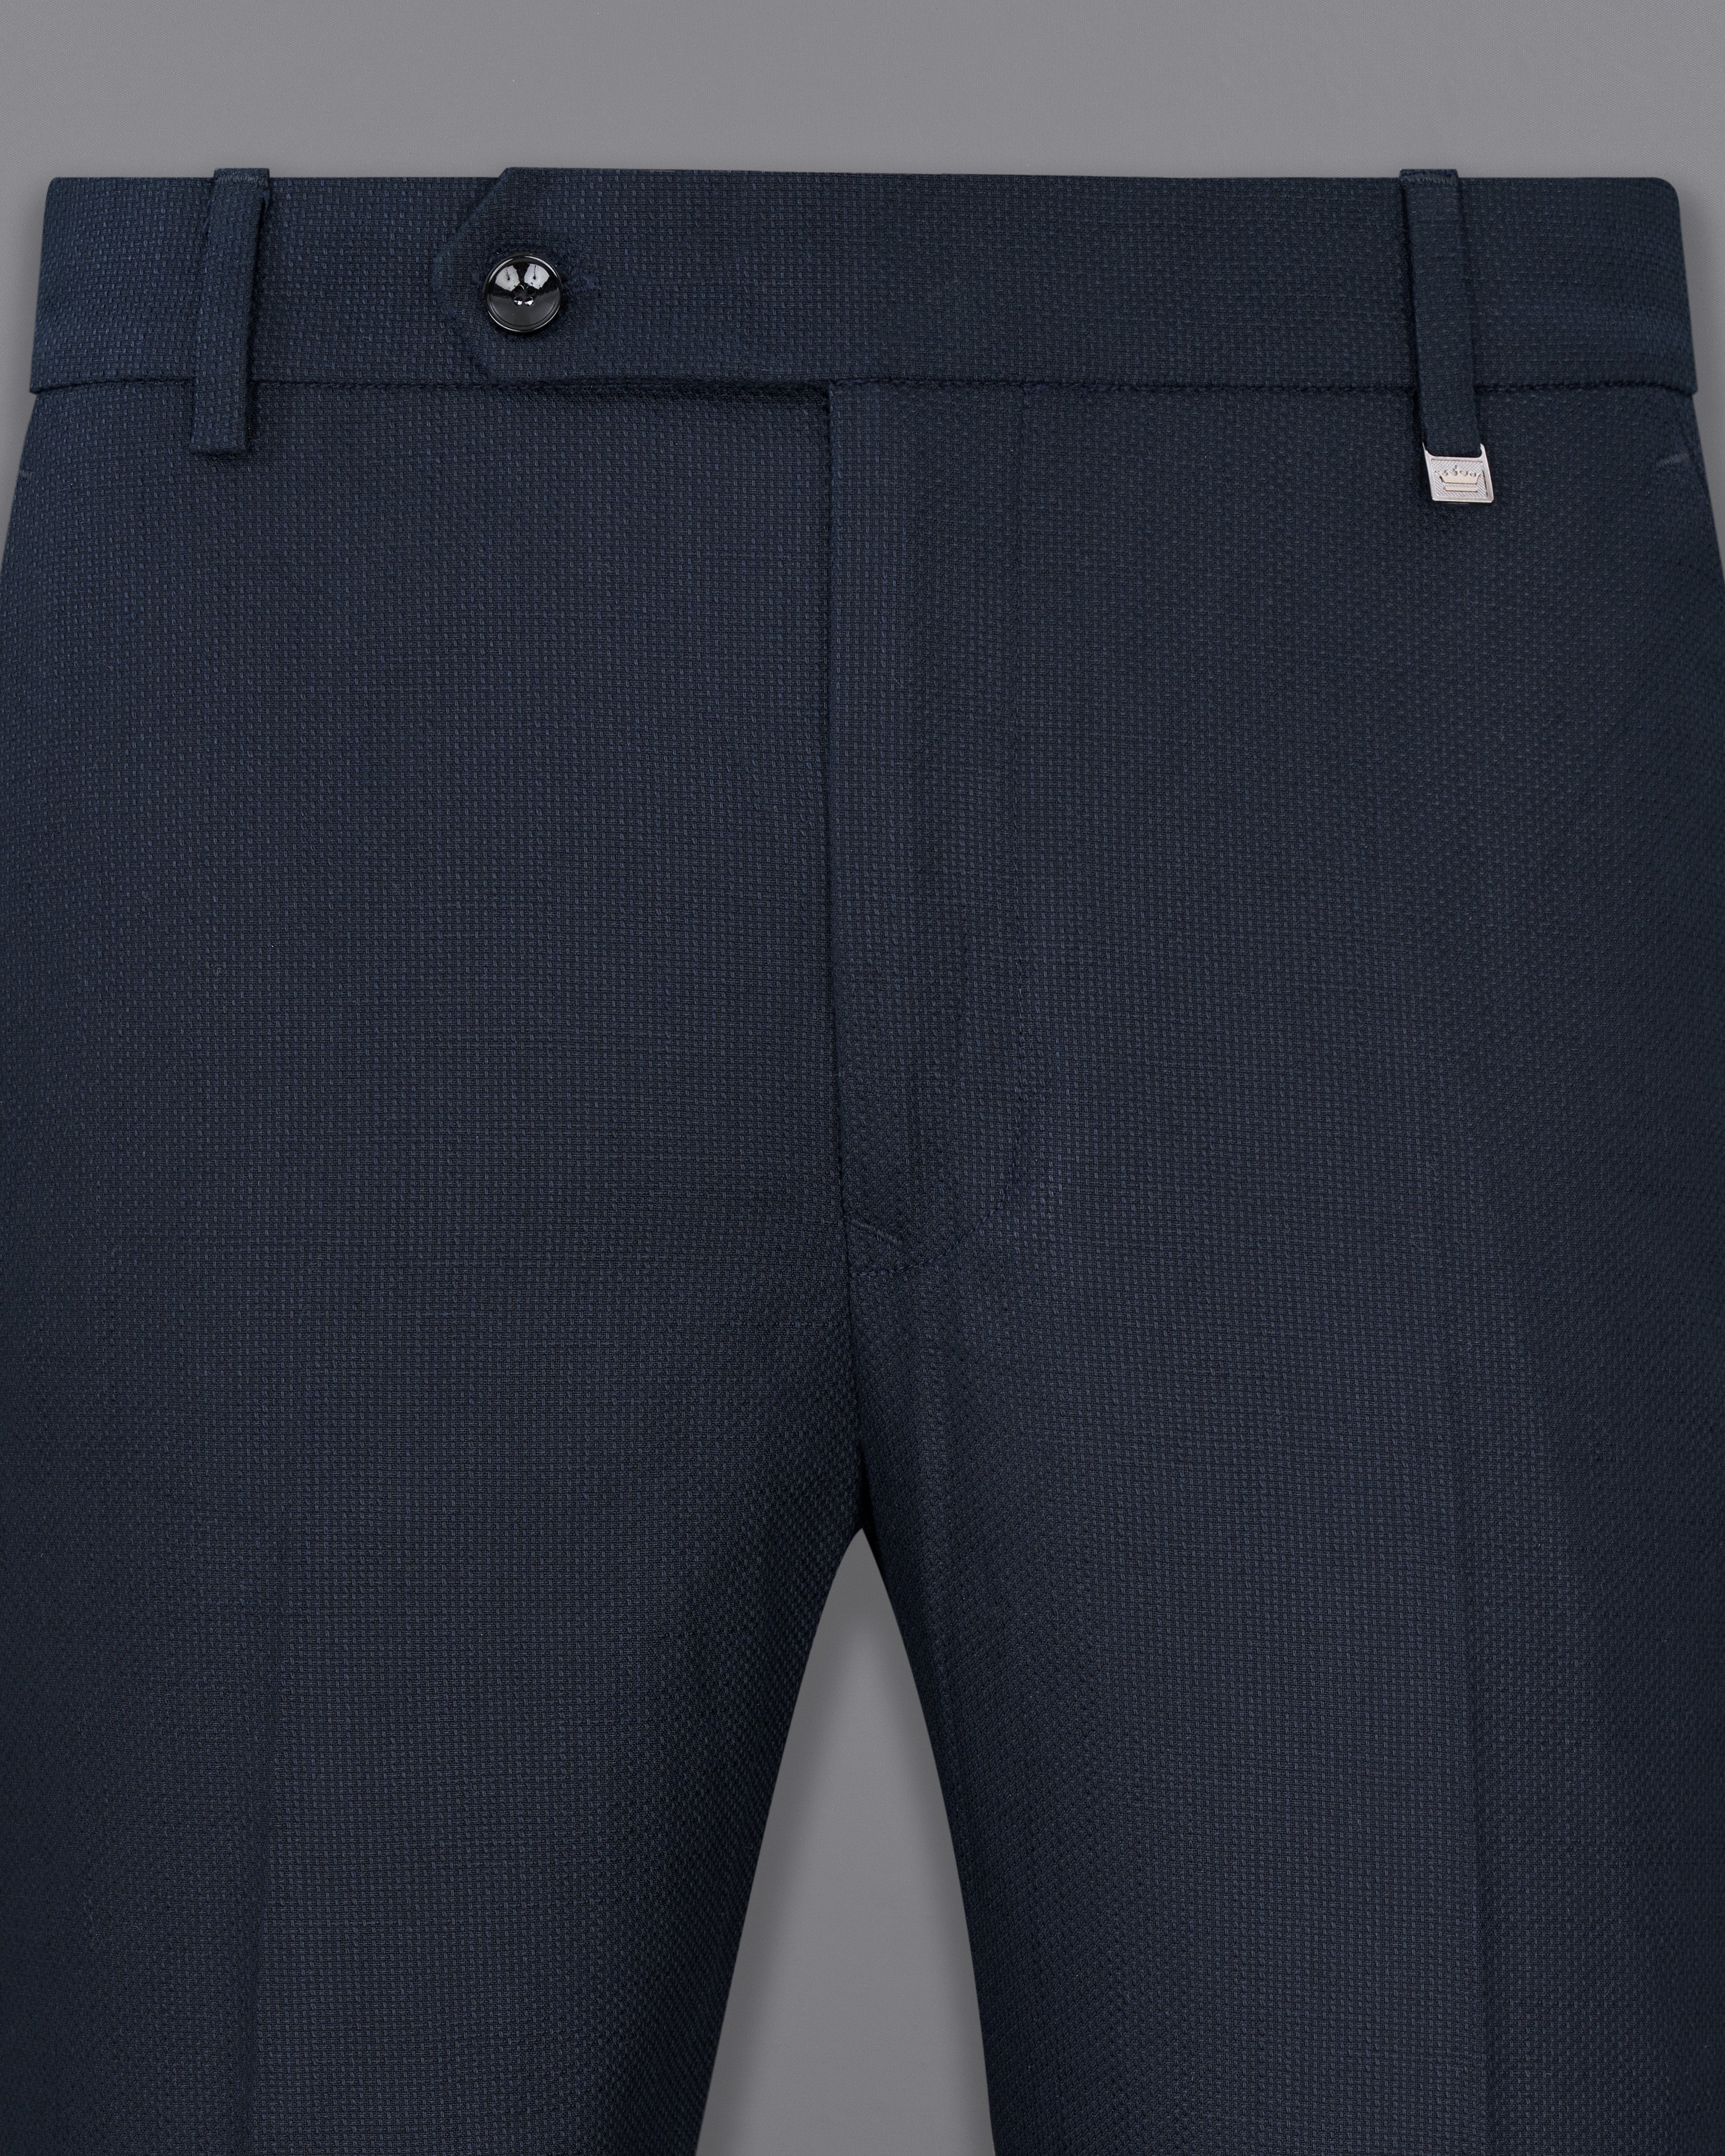 Firefly Navy Blue Premium Cotton Pants T2504-28, T2504-30, T2504-32, T2504-34, T2504-36, T2504-38, T2504-40, T2504-42, T2504-44